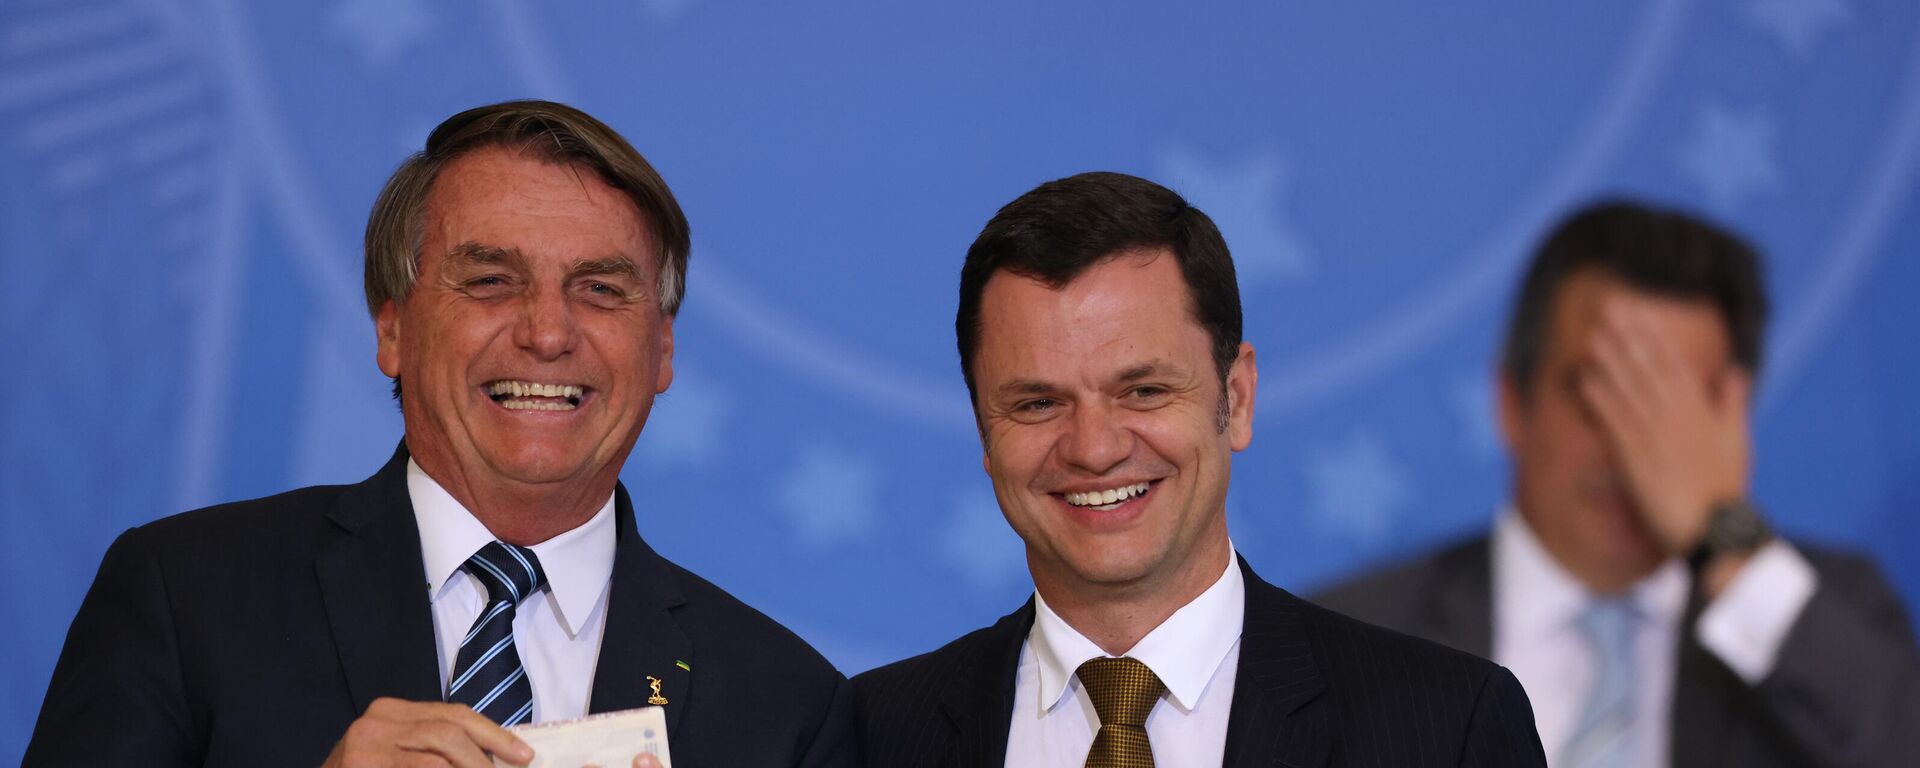 O ex-presidente Jair Bolsonaro (PL) e o ex-ministro da Justiça, Anderson Torres, durante solenidade no Palácio do Planalto, em 27 de junho de 2022 - Sputnik Brasil, 1920, 13.01.2023